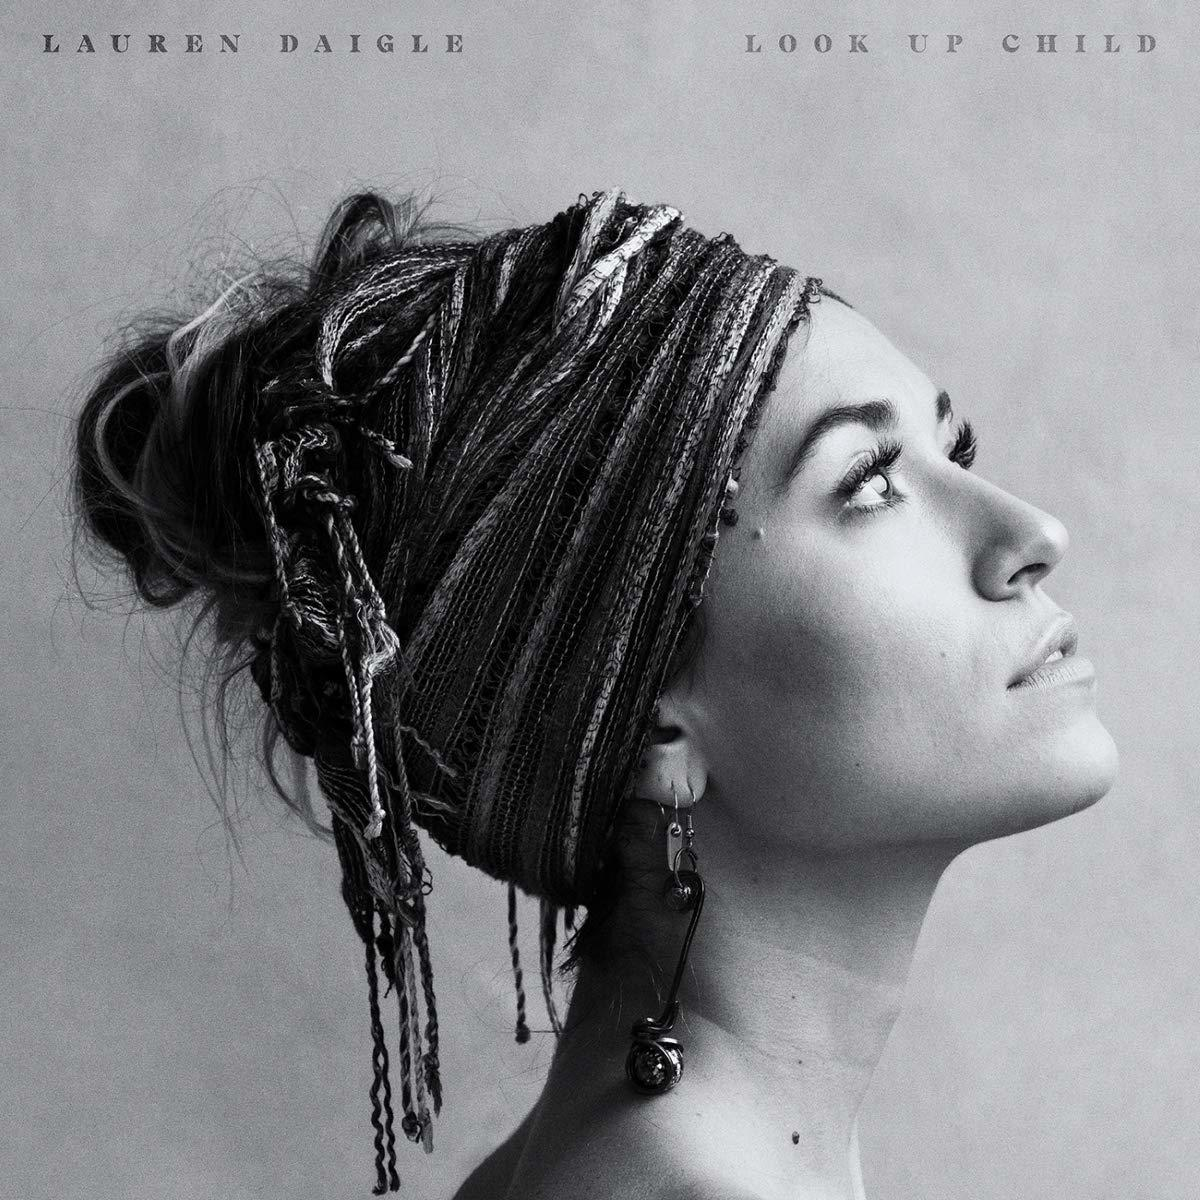 Lauren Daigle - Look (CD) Child - Up